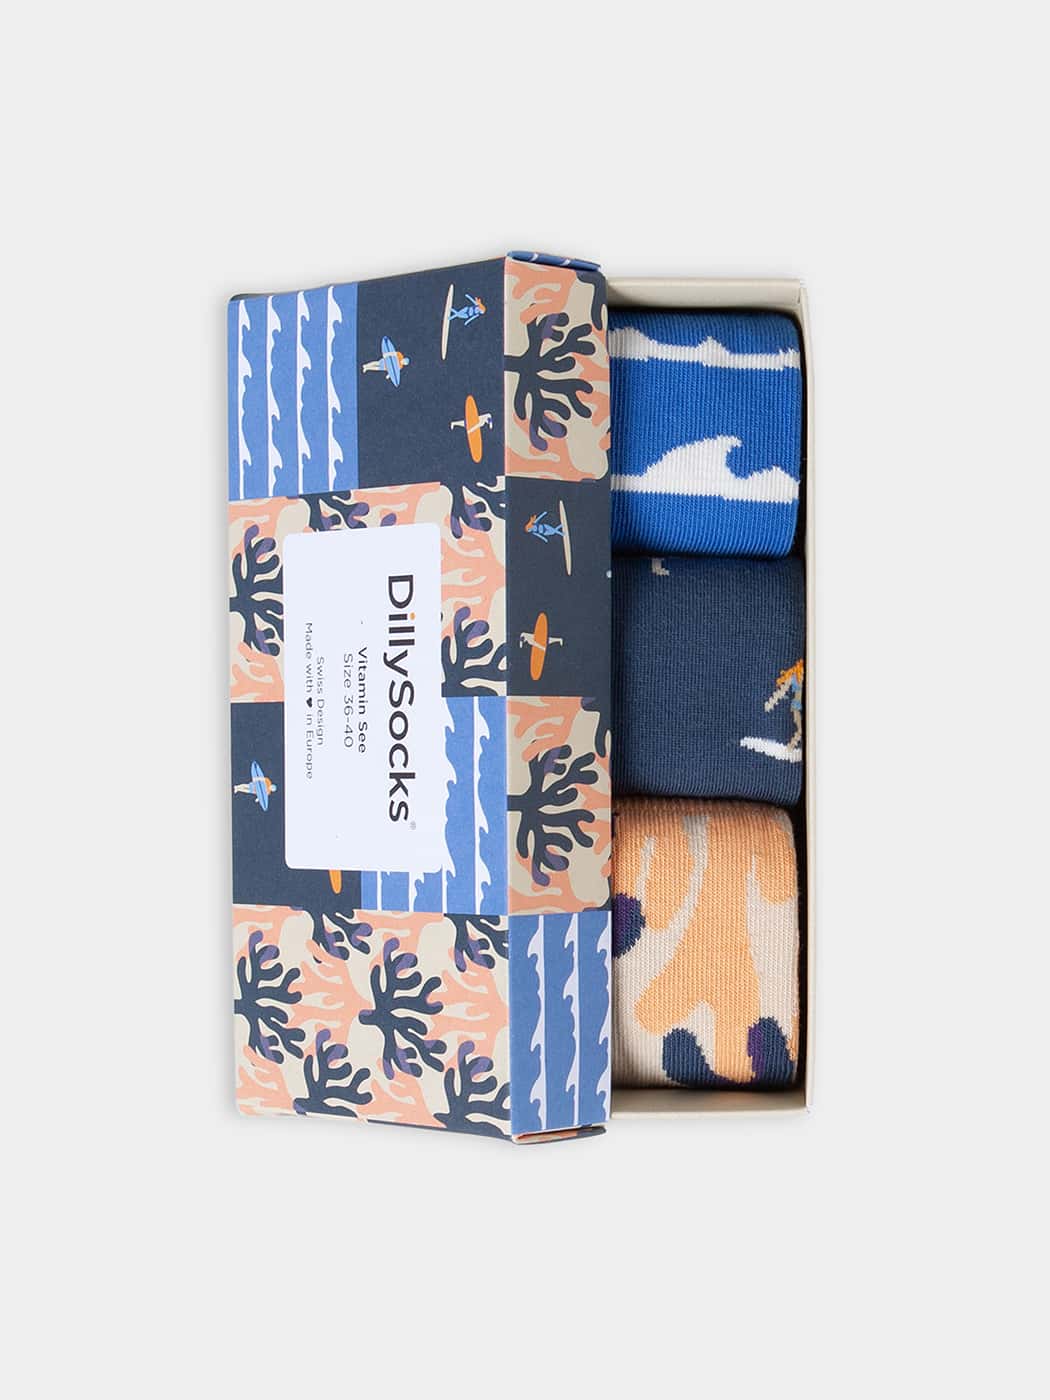 - Socken-Geschenkbox in Gelb Blau mit Wasser Motiv/Muster von DillySocks